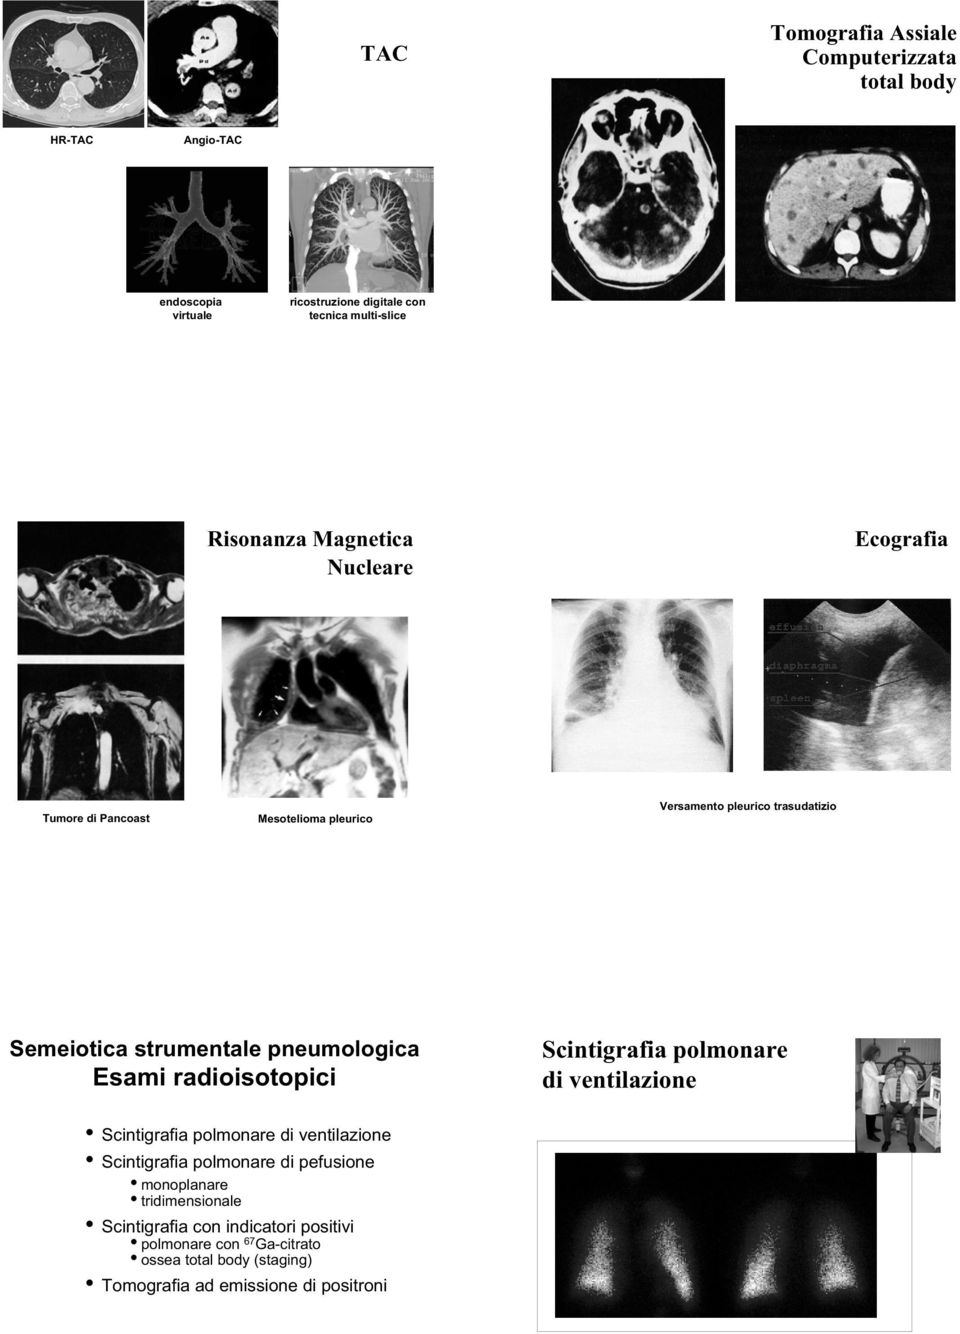 Esami radioisotopici Scintigrafia polmonare di ventilazione Scintigrafia polmonare di ventilazione Scintigrafia polmonare di pefusione